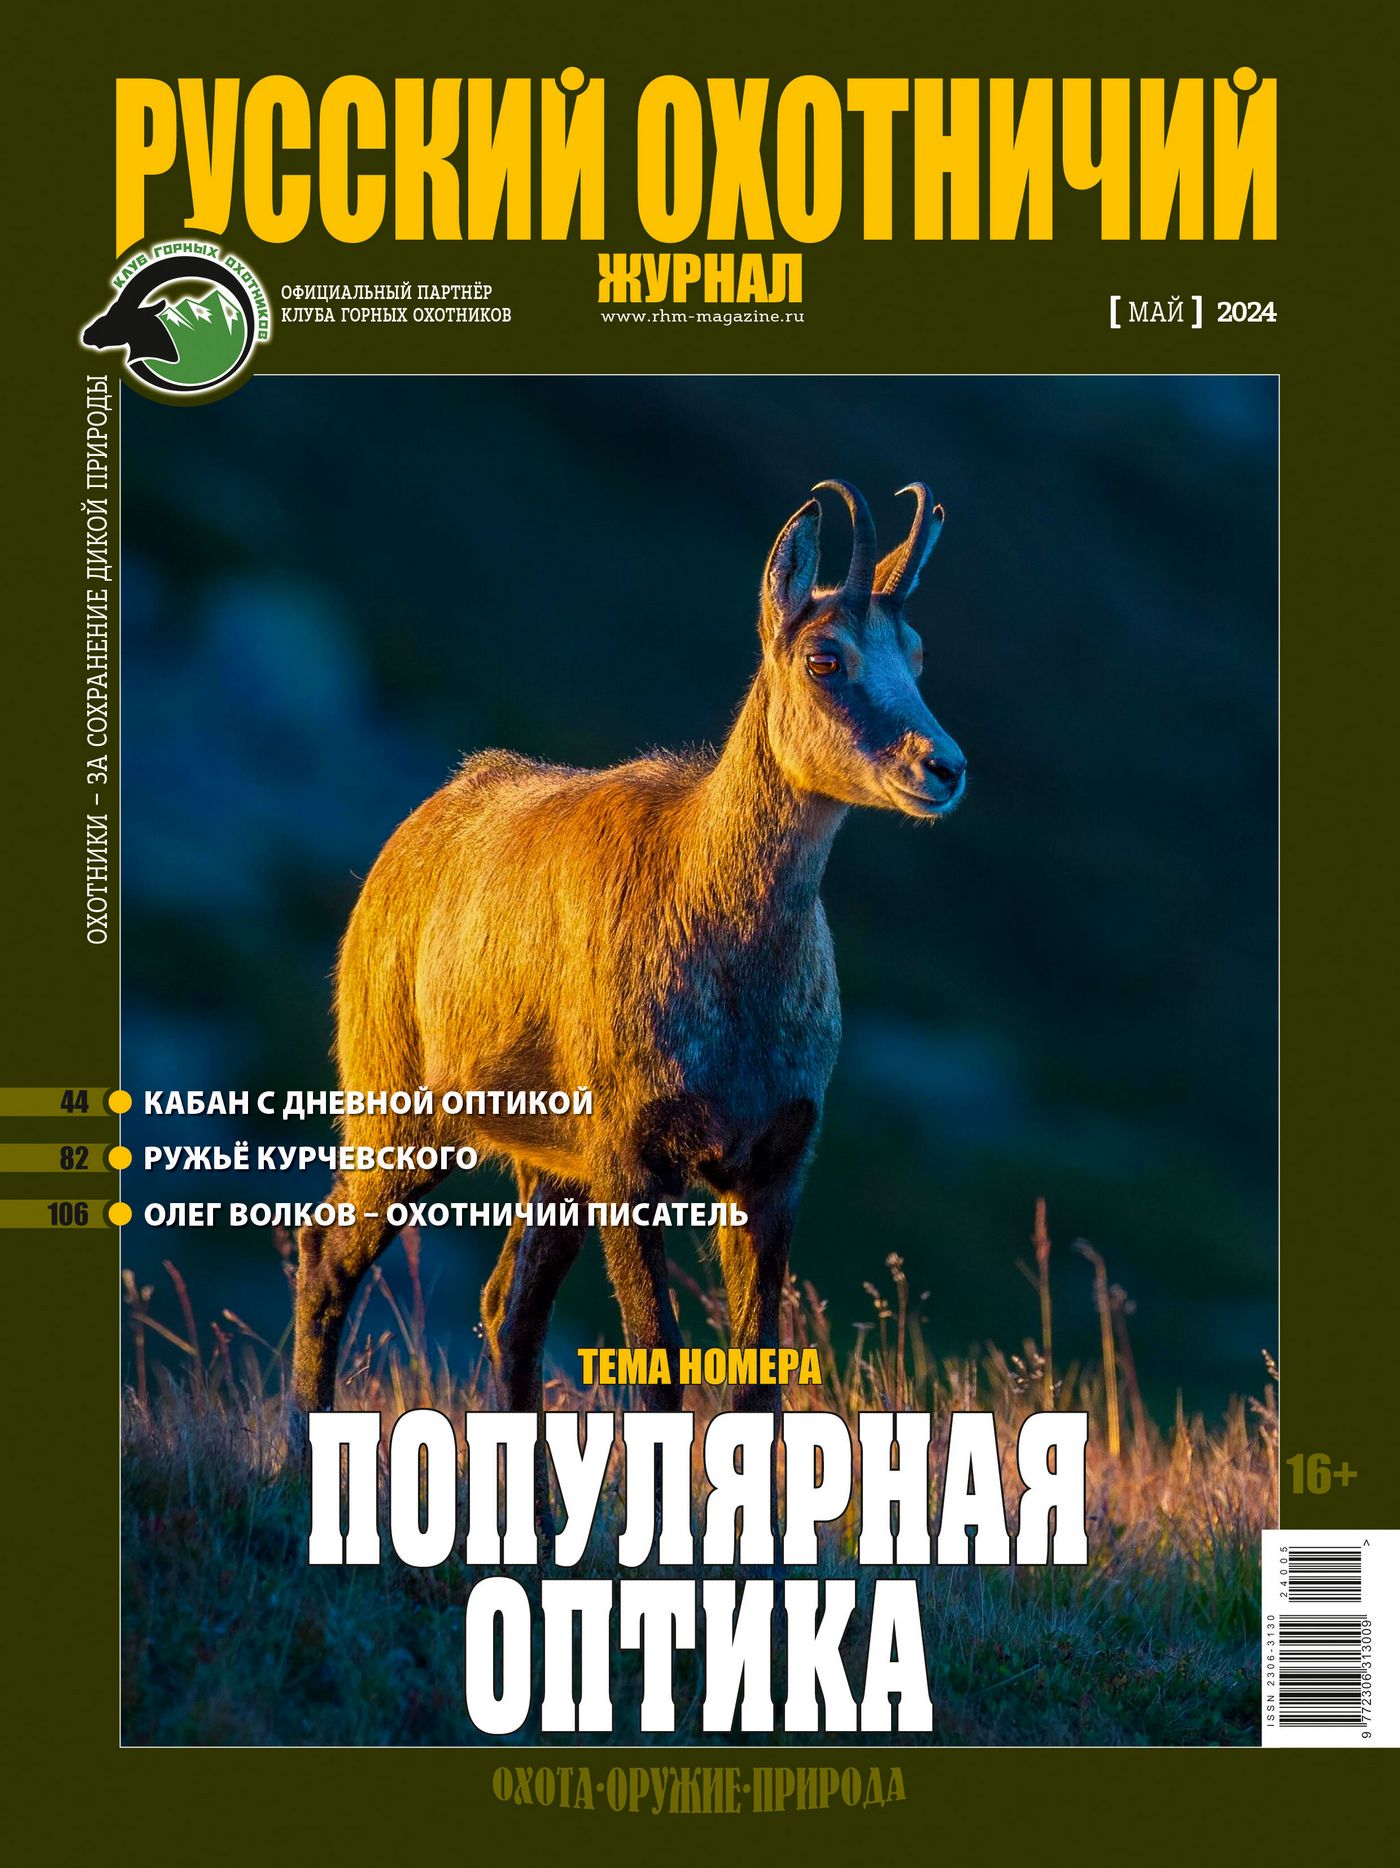 «Популярная оптика». «Русский охотничий журнал», №5 мая 2024